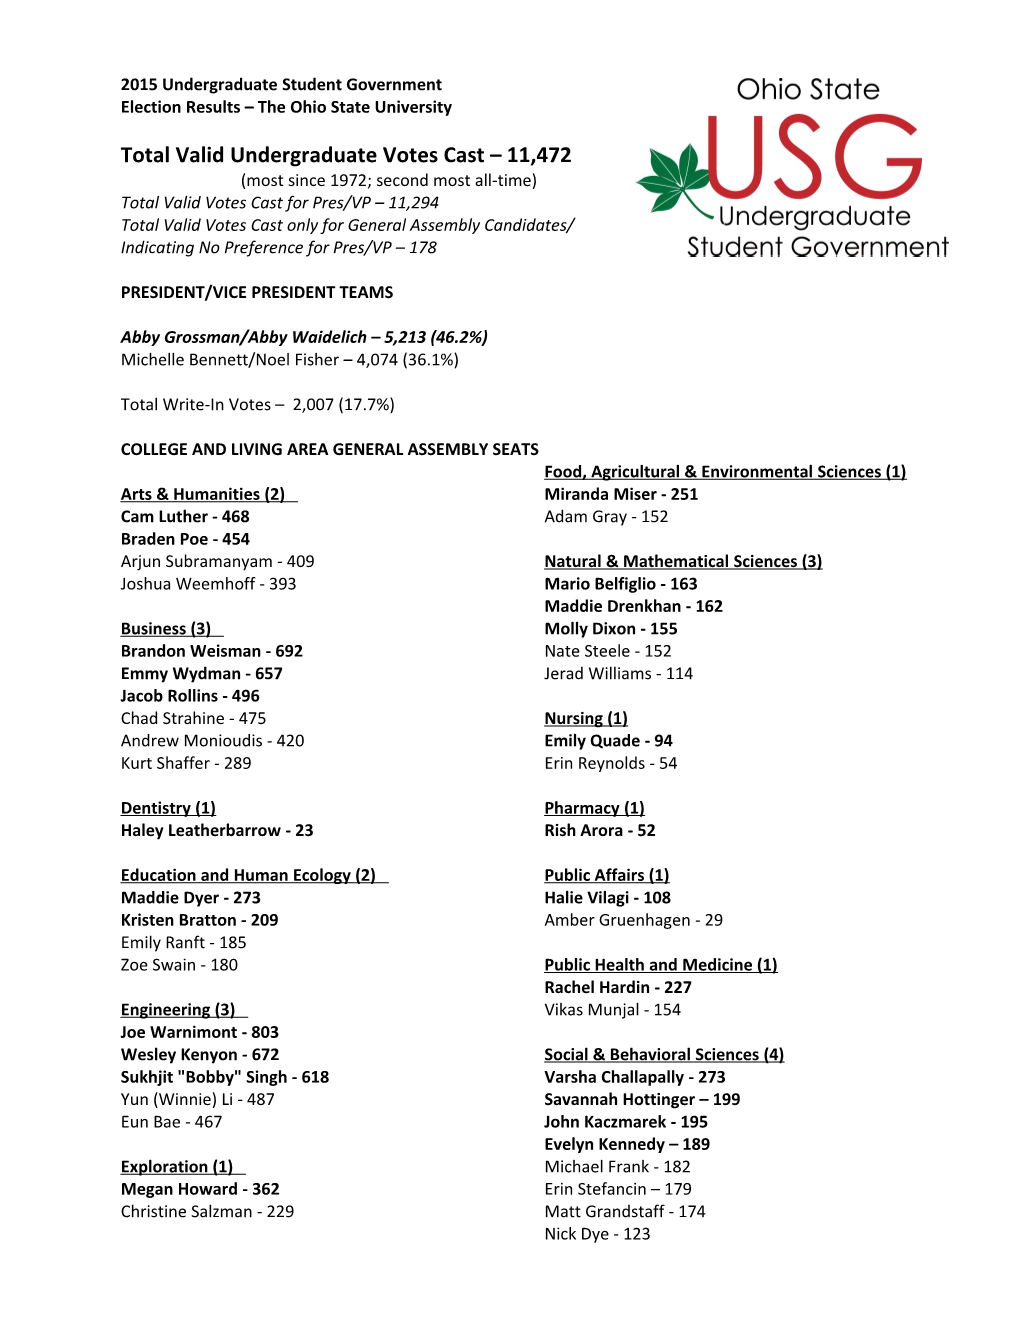 2009 USG Election Results